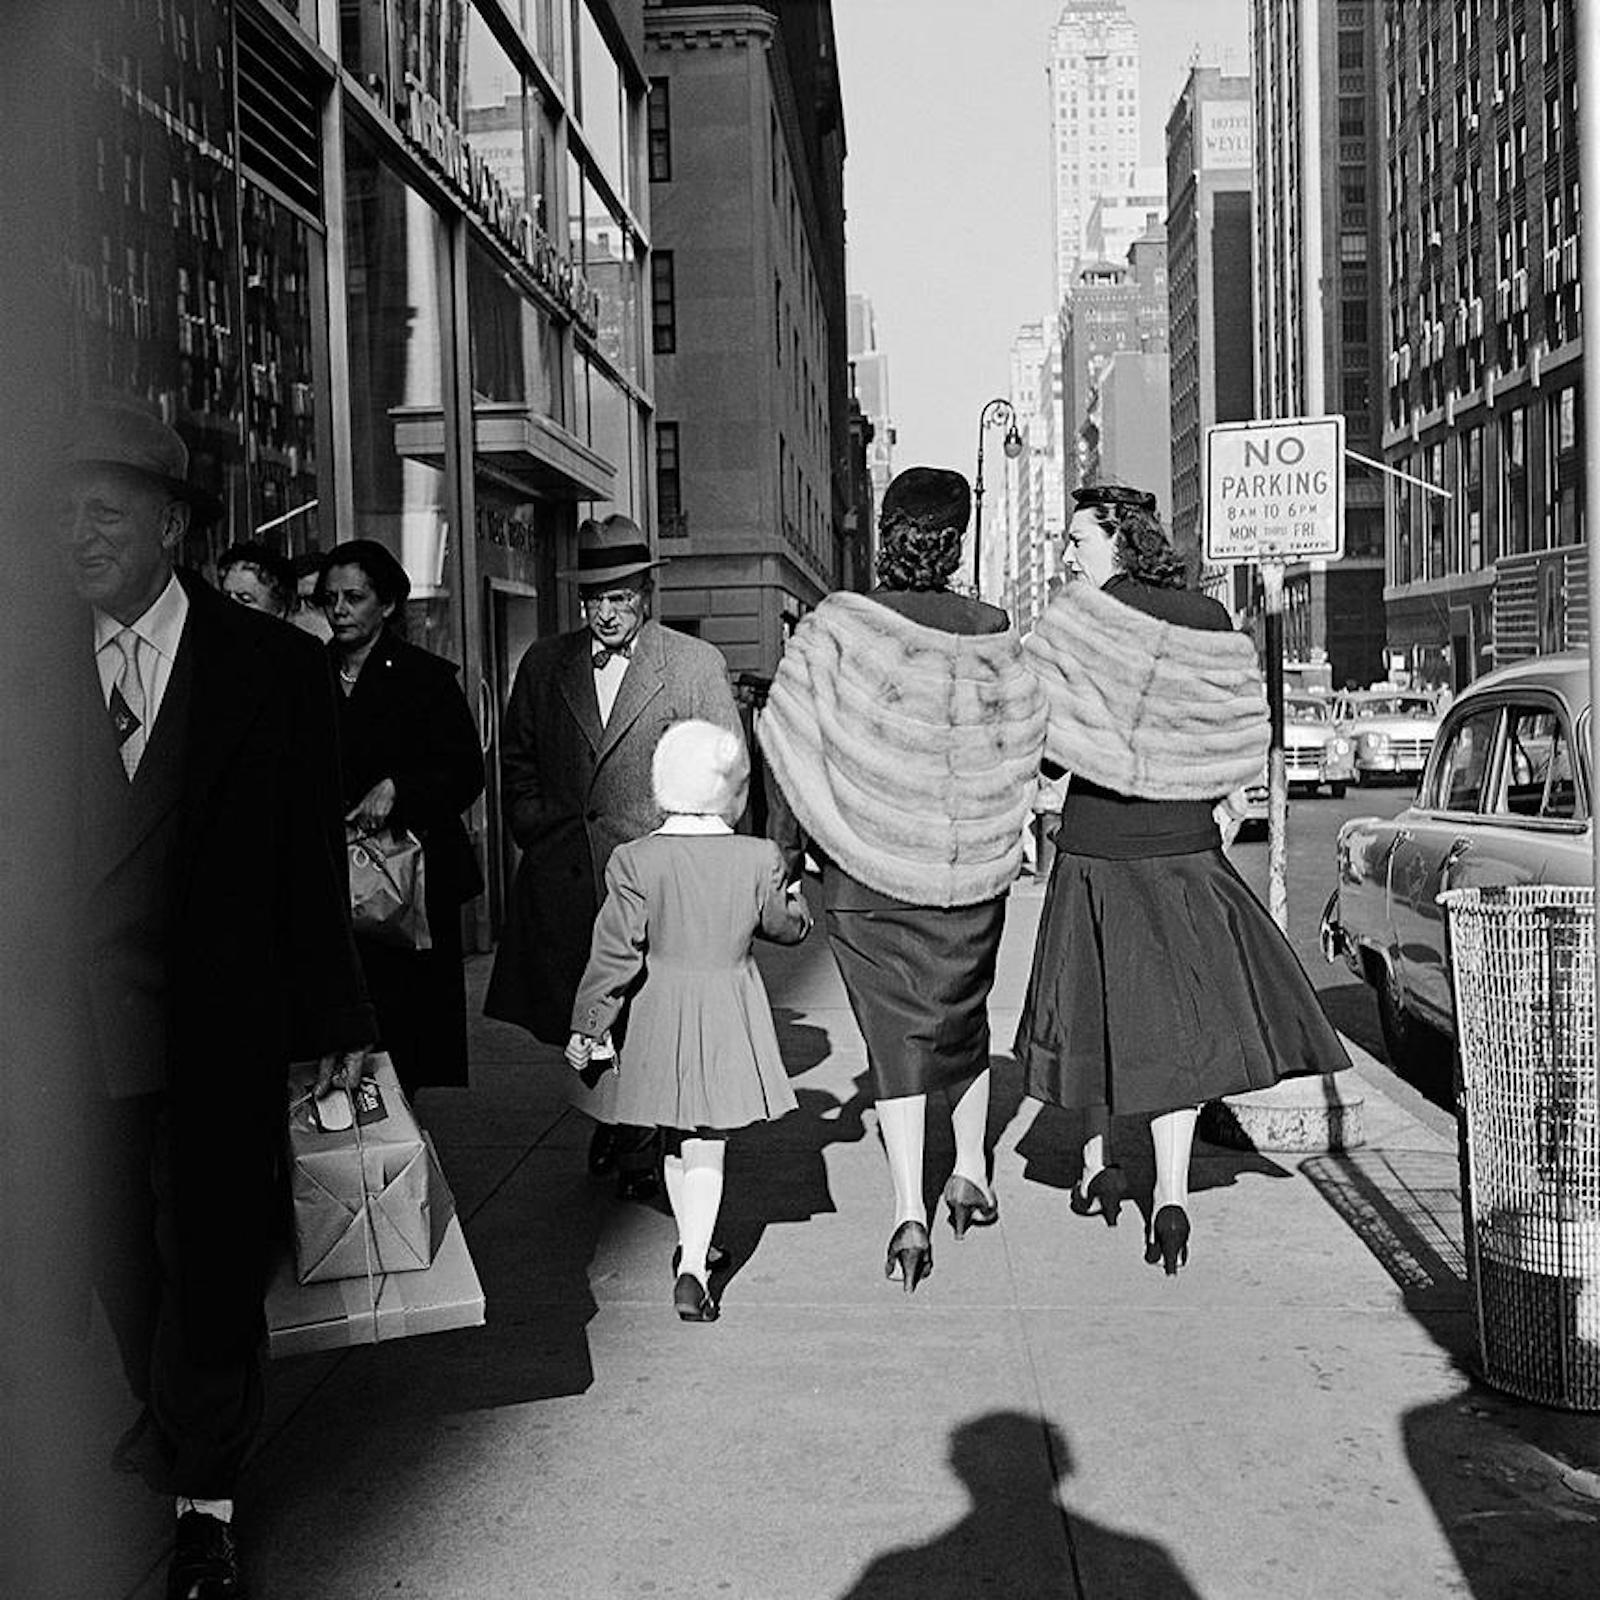 New York, NY, 1954